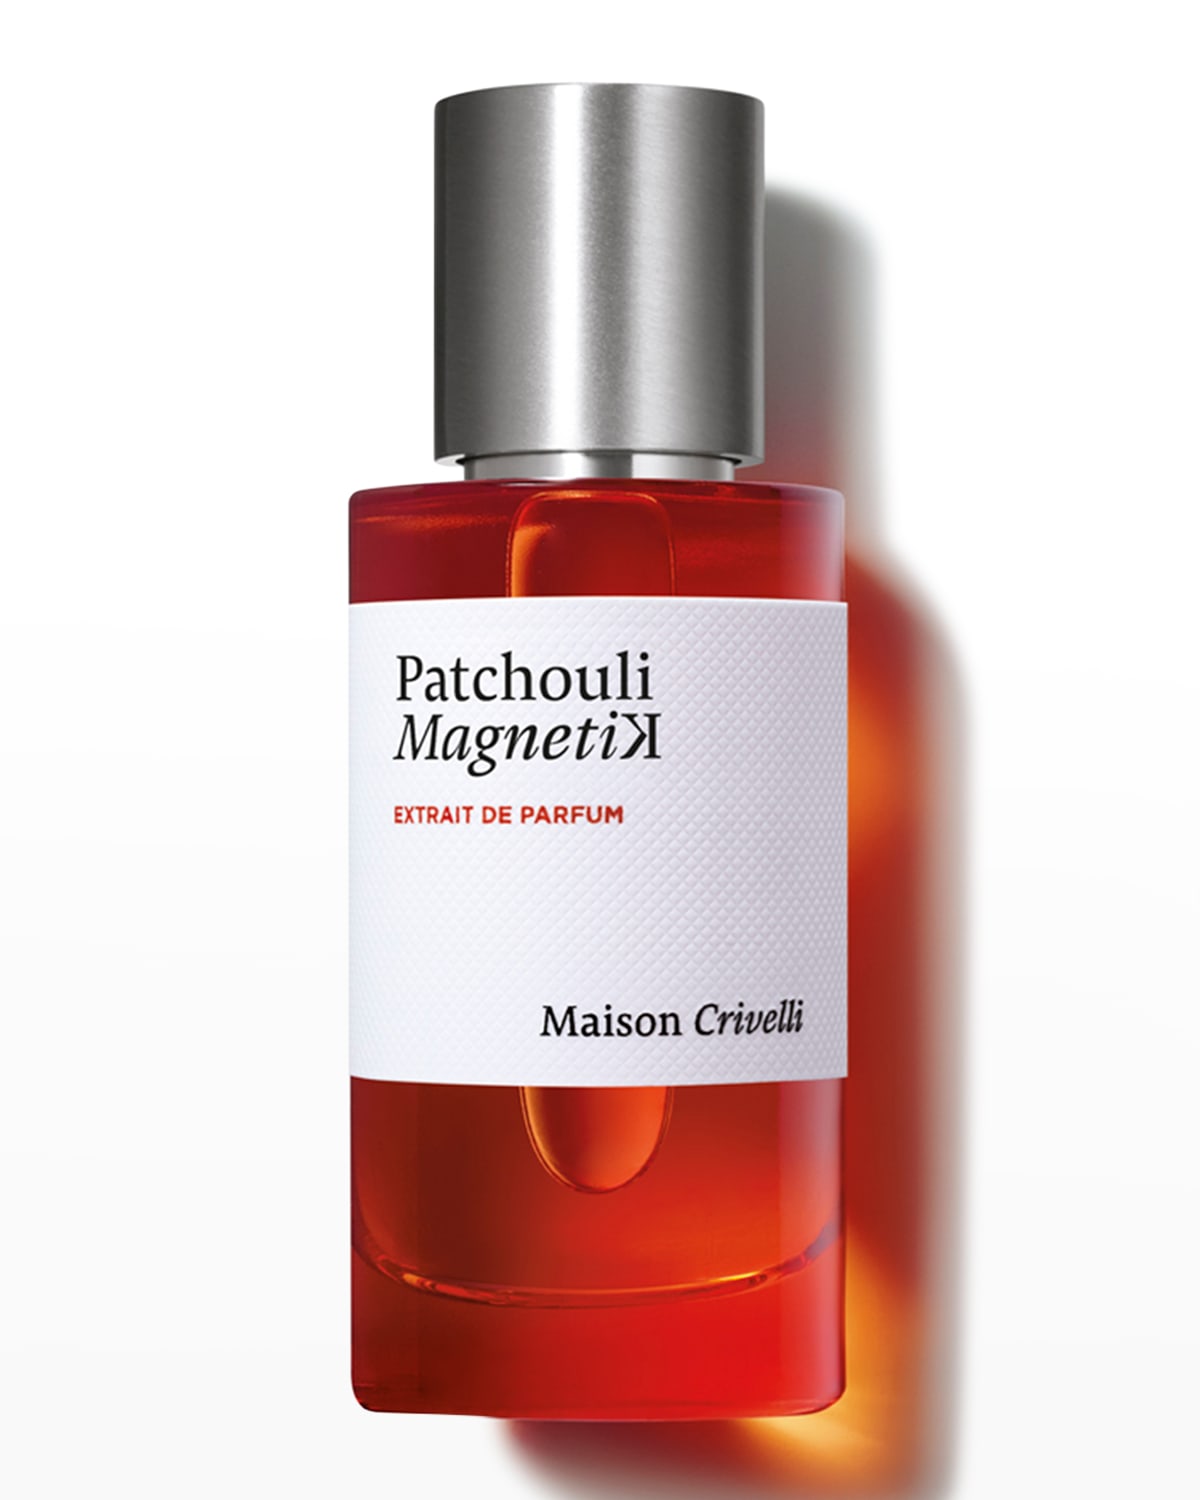 Maison Crivelli Patchouli Magnetik Extrait de Parfum, 1.7 oz.